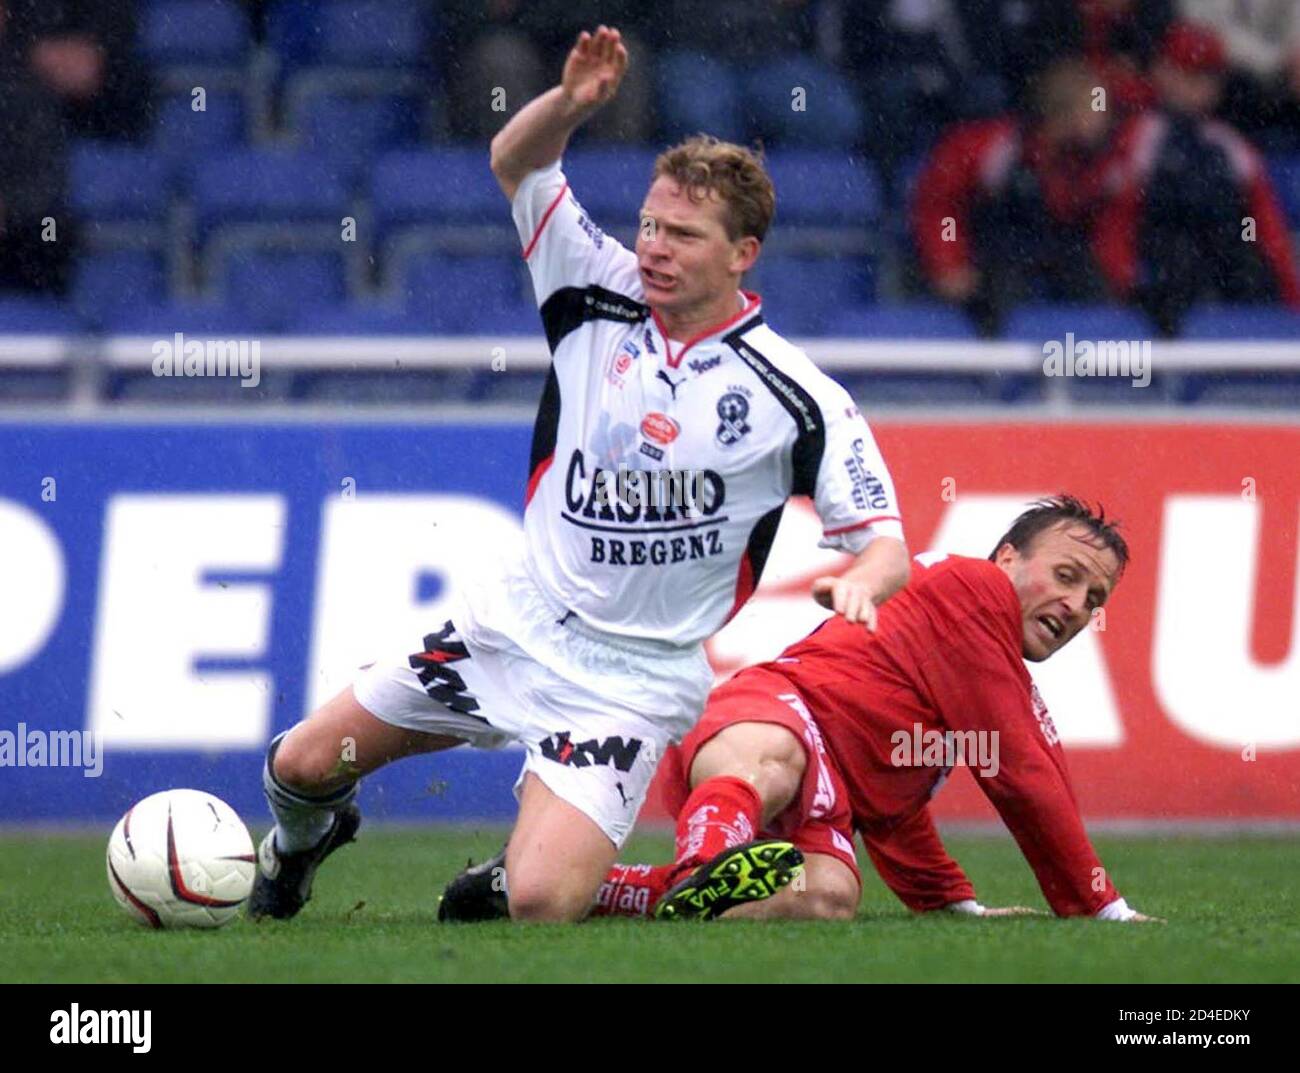 In der Fussball-Bundesliga spielte am Samstag, dem 13. April 2002 Bregenz  gegen den GAK. Im Bild Erik Regtop und Dieter Ramusch. Der GAK gewann das  Spiel mit 4-1. REUTERS/Miro Kuzmanovic REUTERS LF